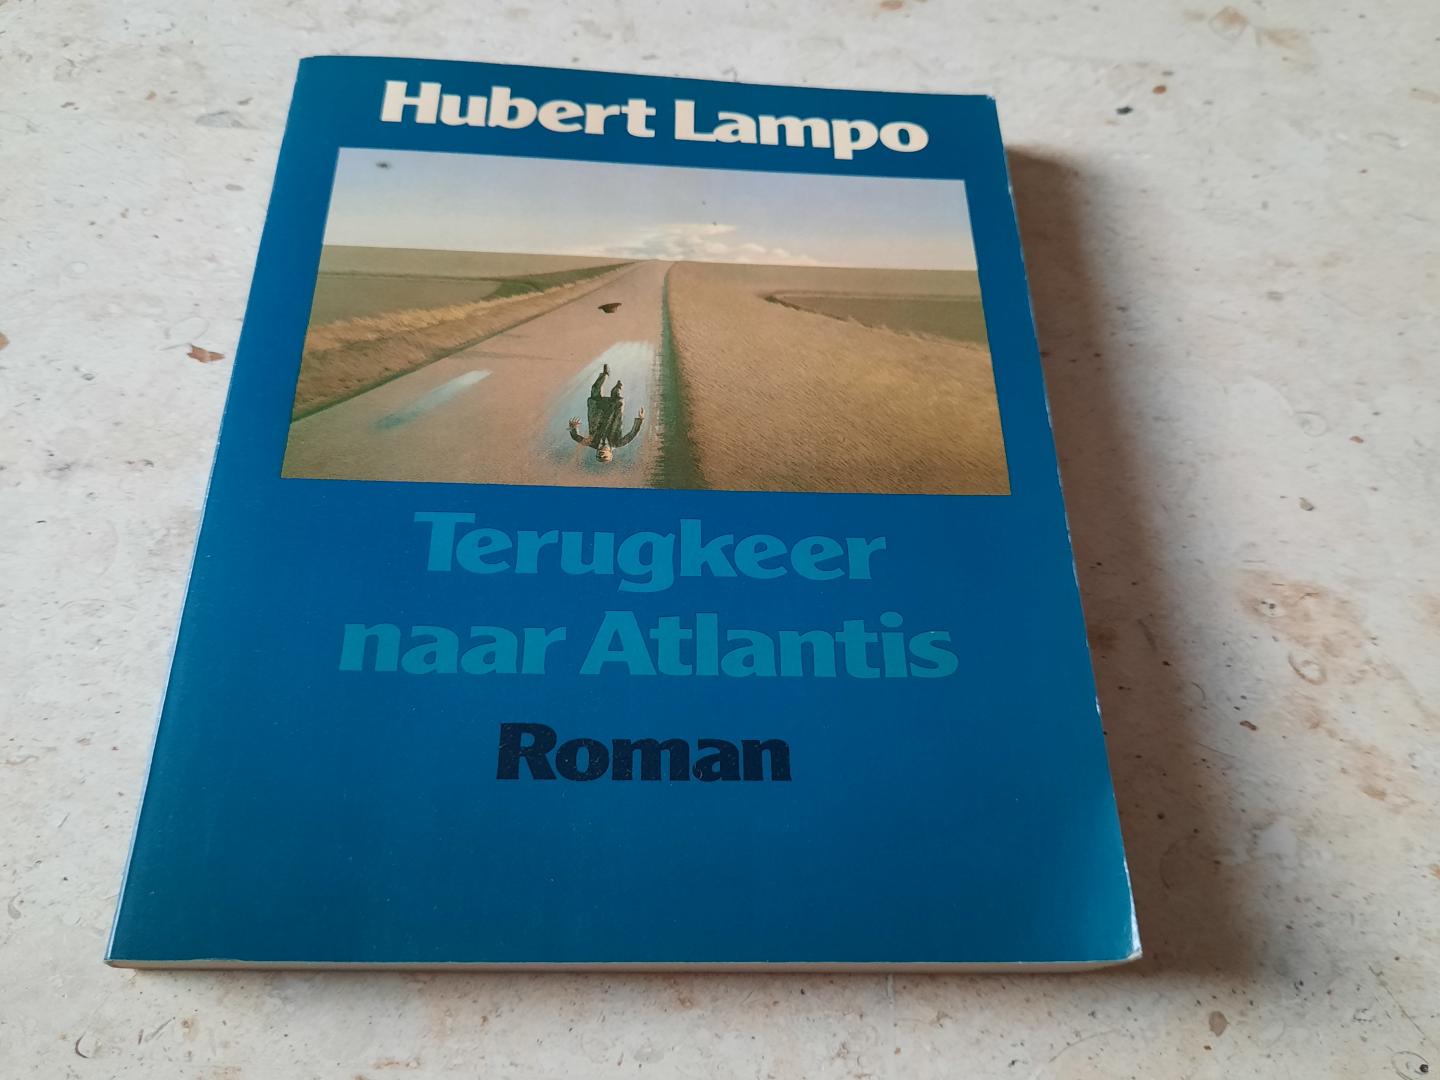 Lampo, Hubert - Terugkeer naar atlantis